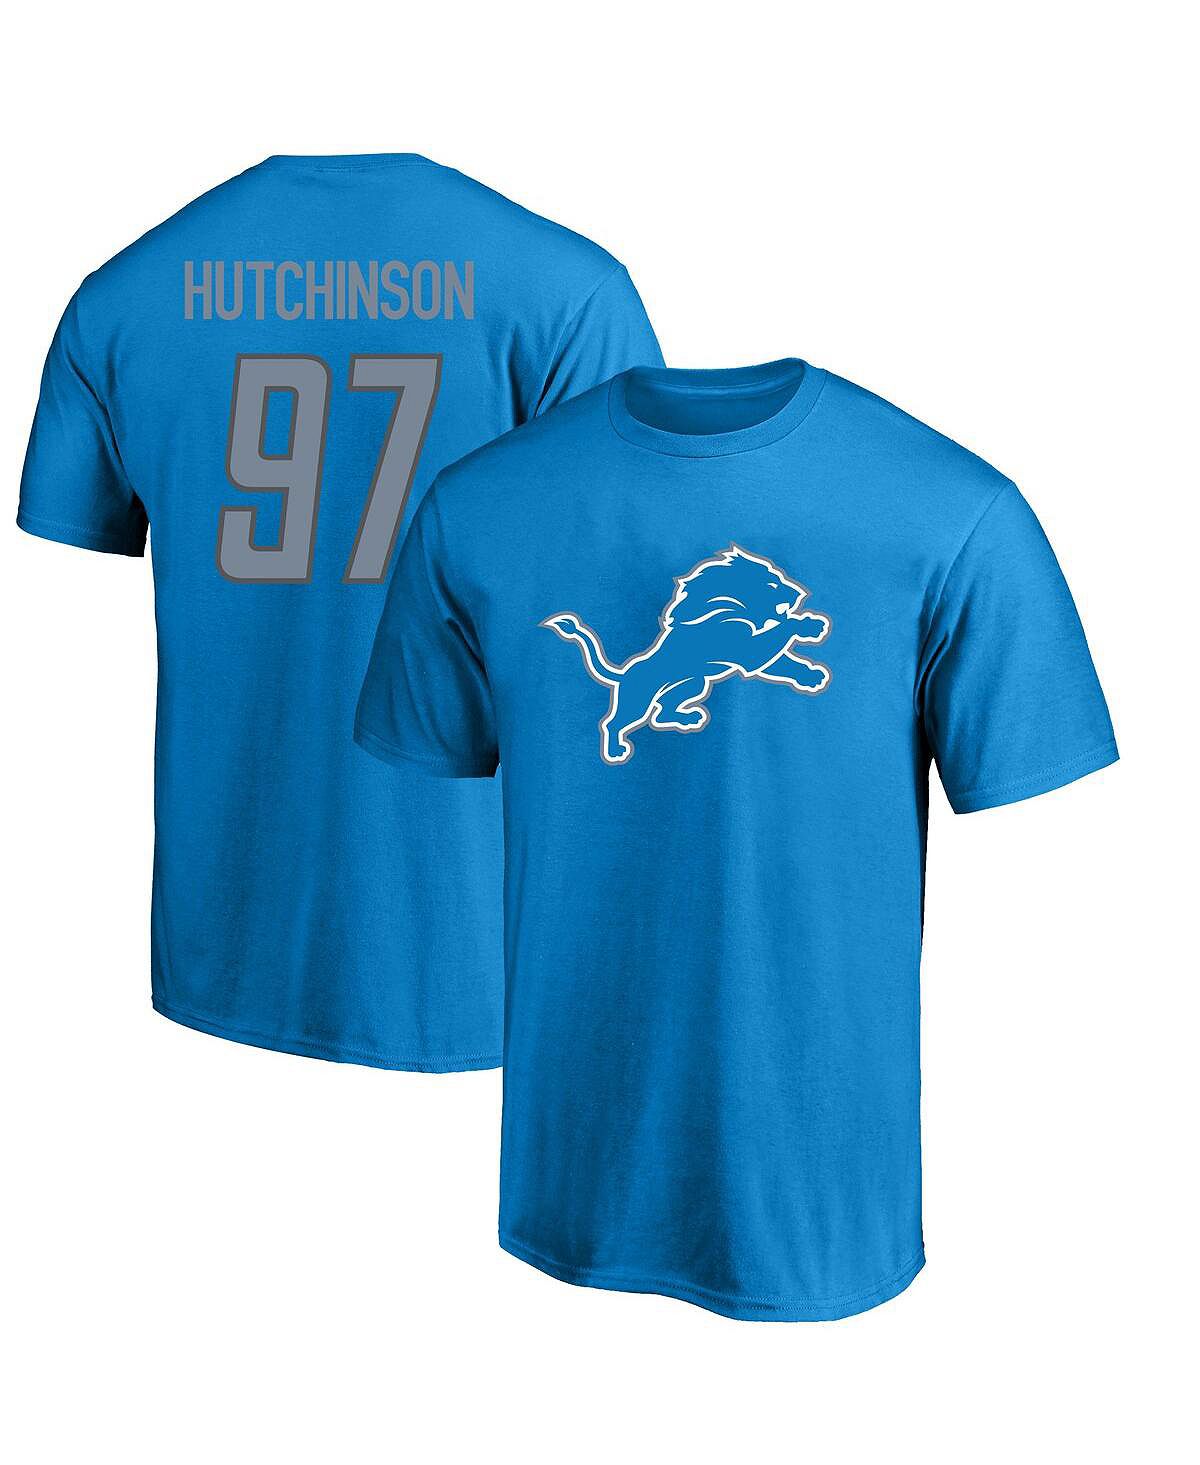 Мужская синяя футболка с логотипом Aidan Hutchinson Detroit Lions Big and Tall, имя и номер игрока Fanatics